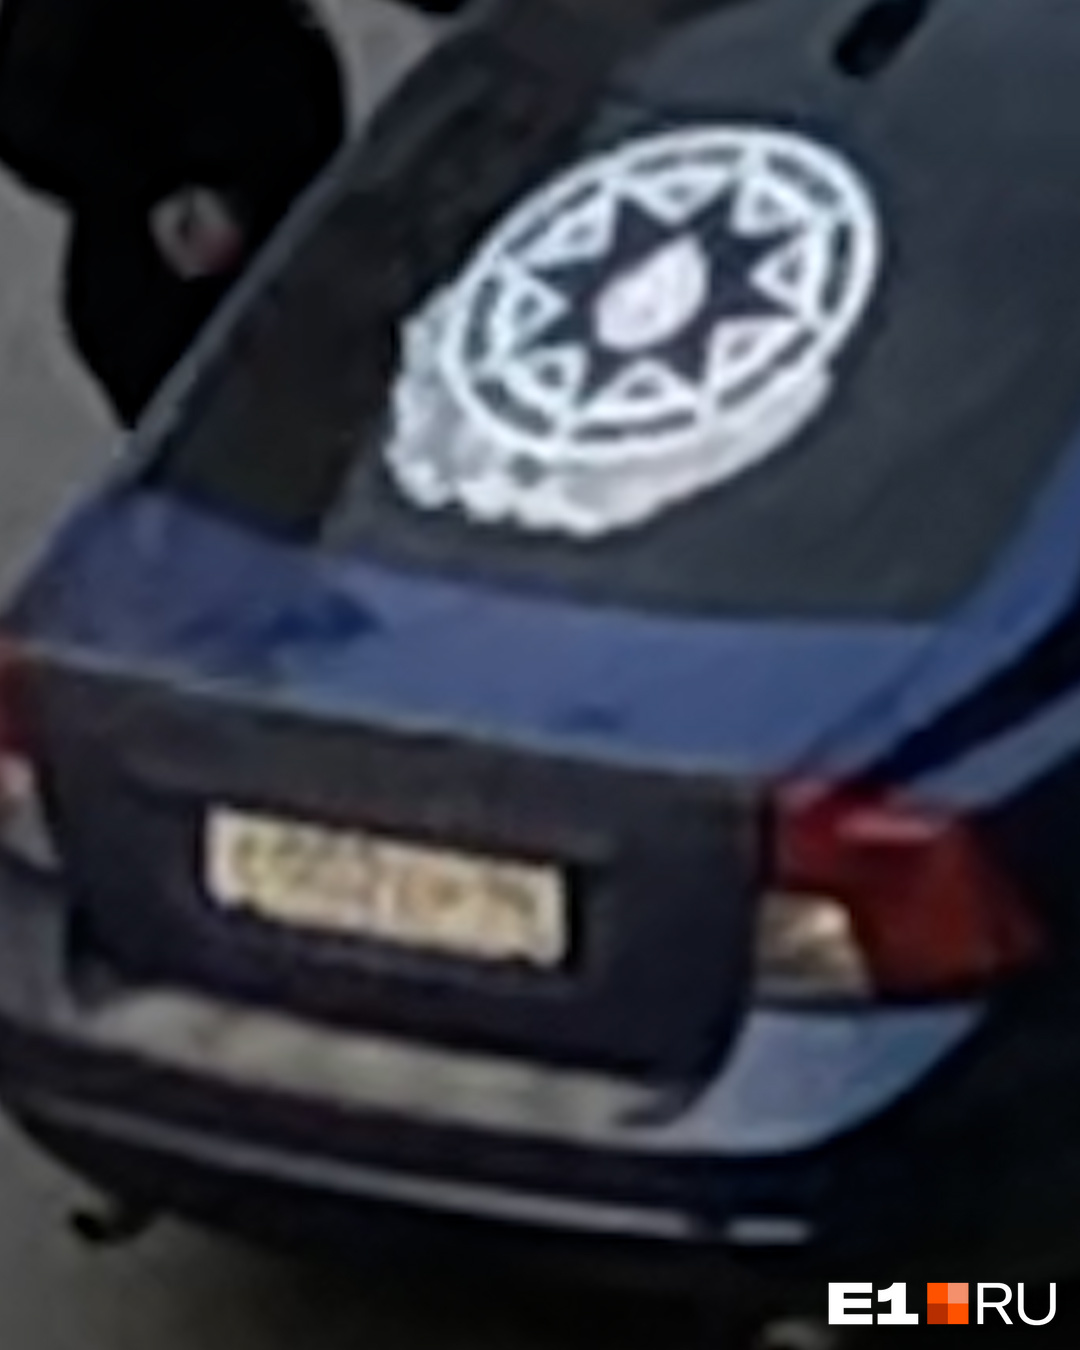 Автомобиль можно опознать по большой наклейке на заднем стекле — это государственный герб Азербайджана